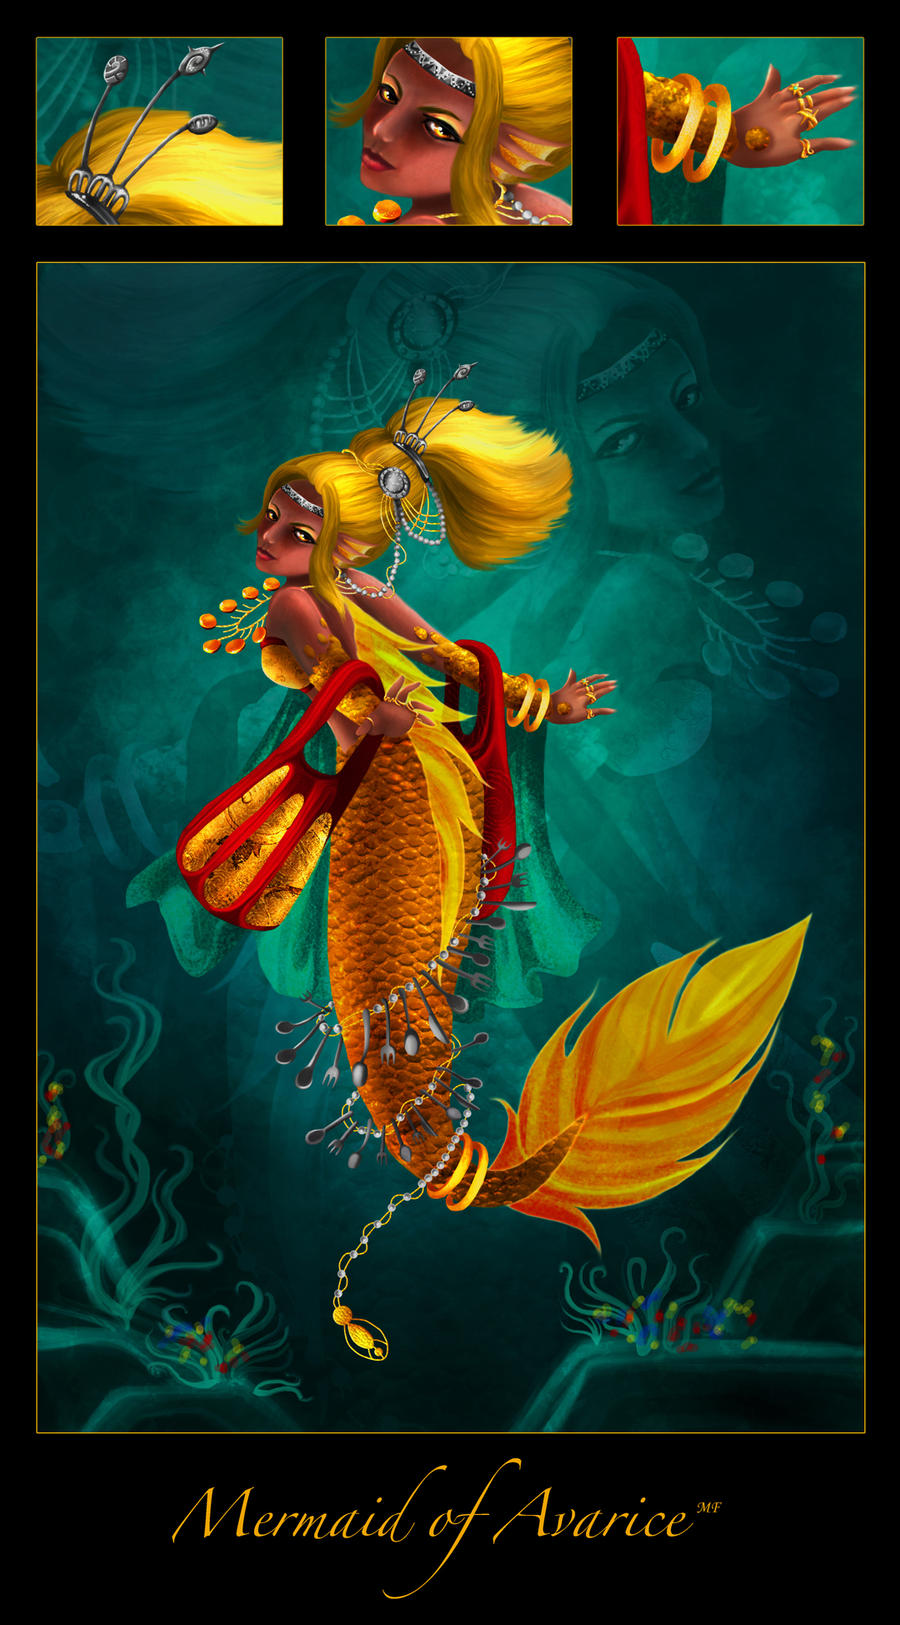 Mermaid of Avarice